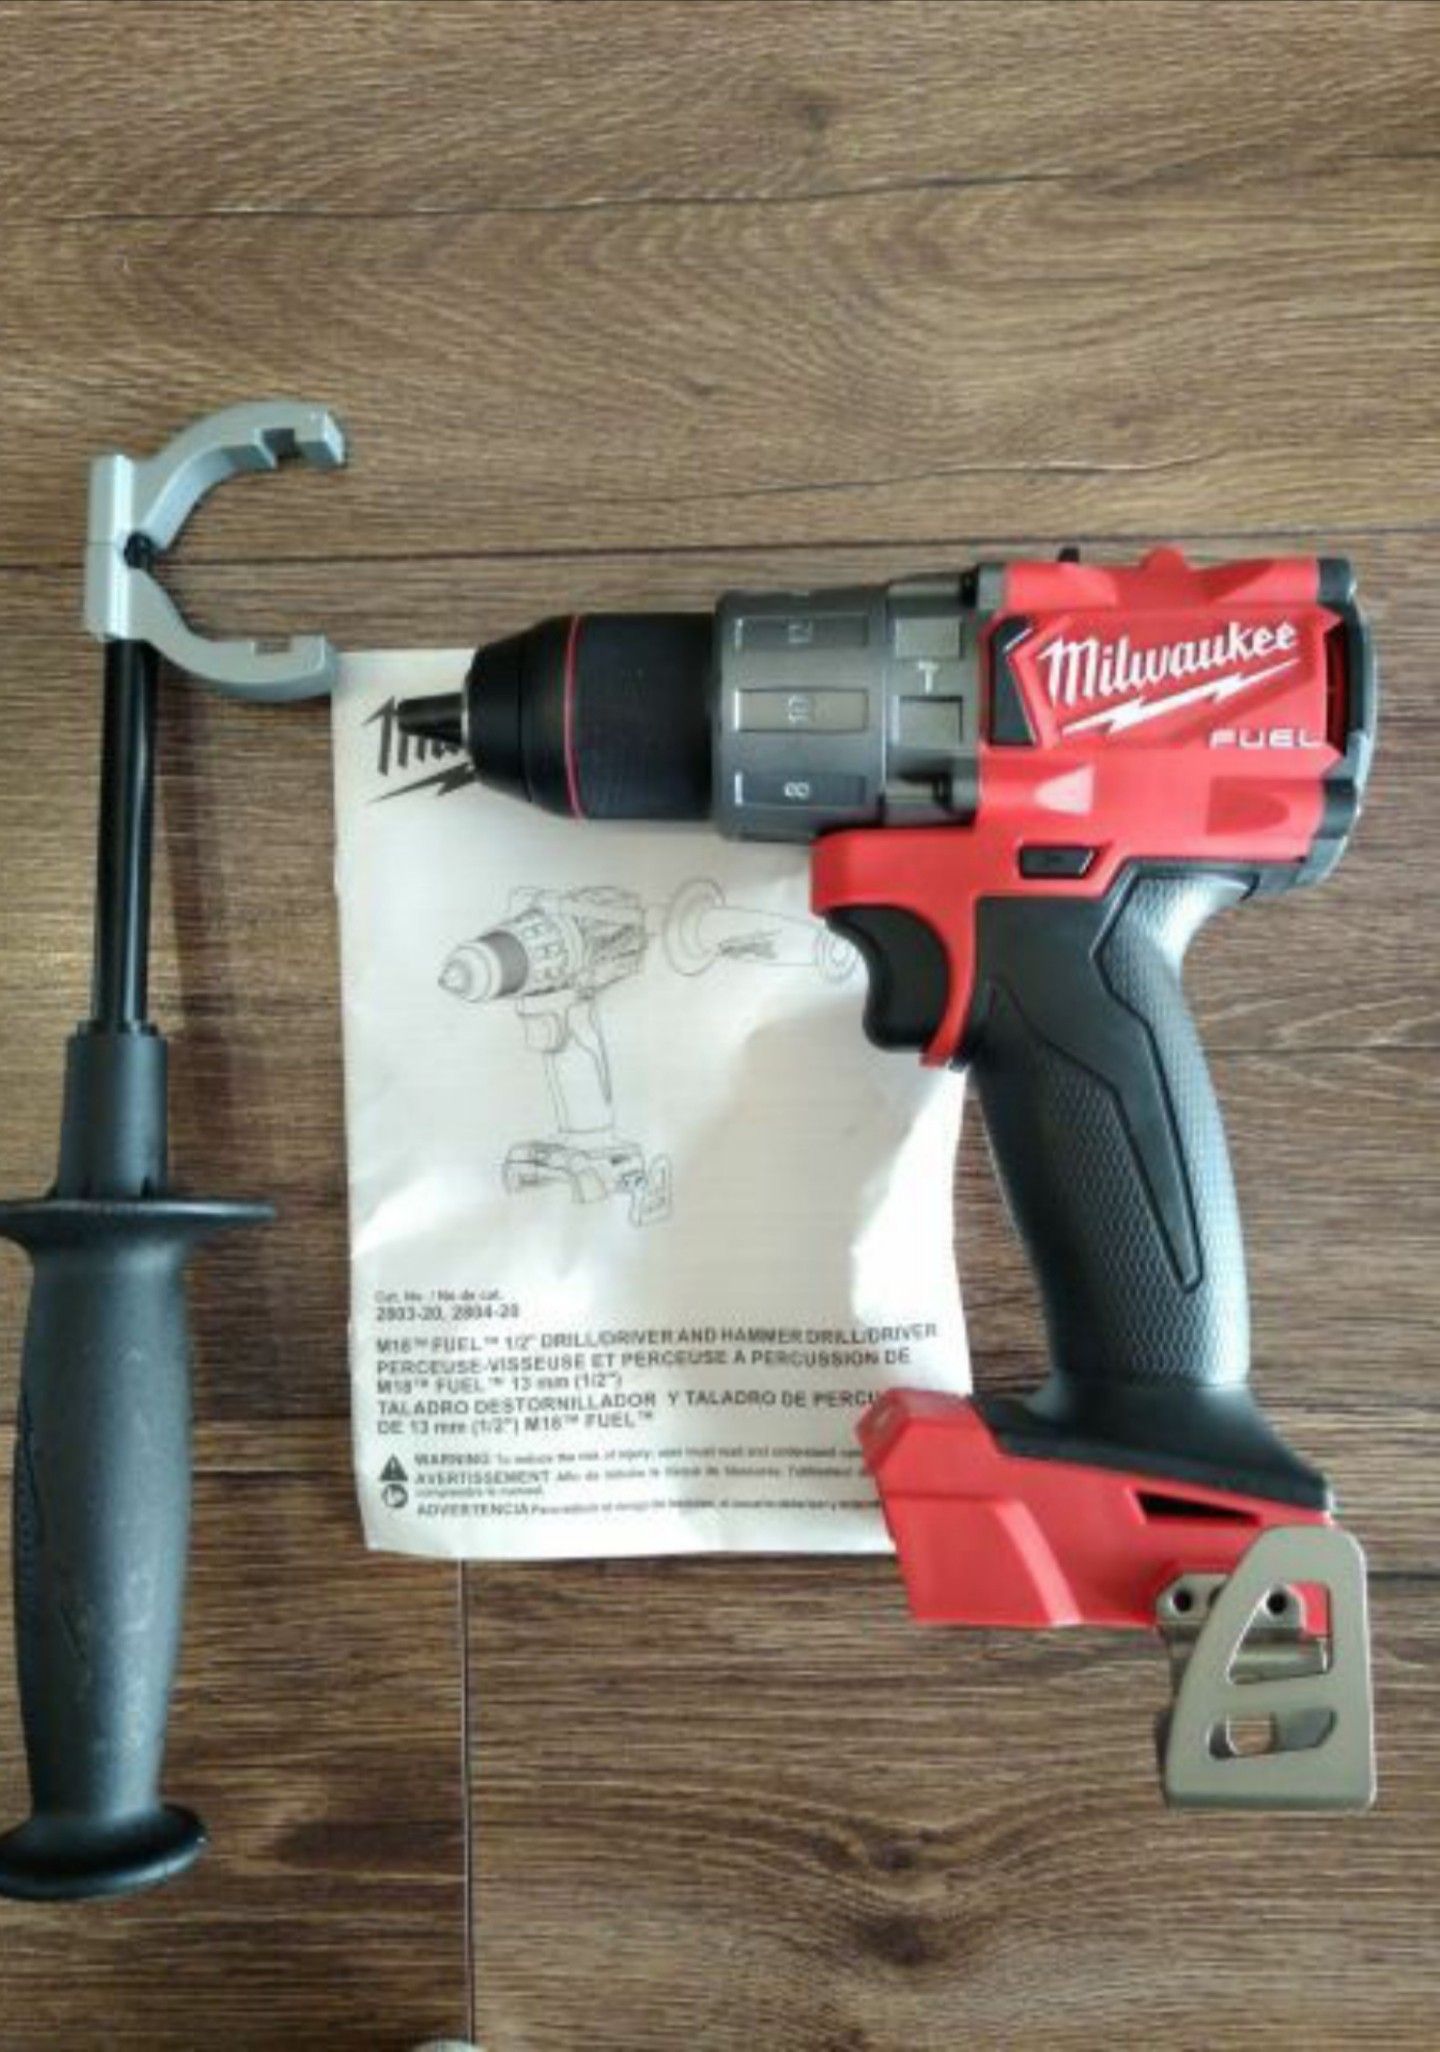 Brand new Milwaukee M18 Fuel Brushless Hammer Drill